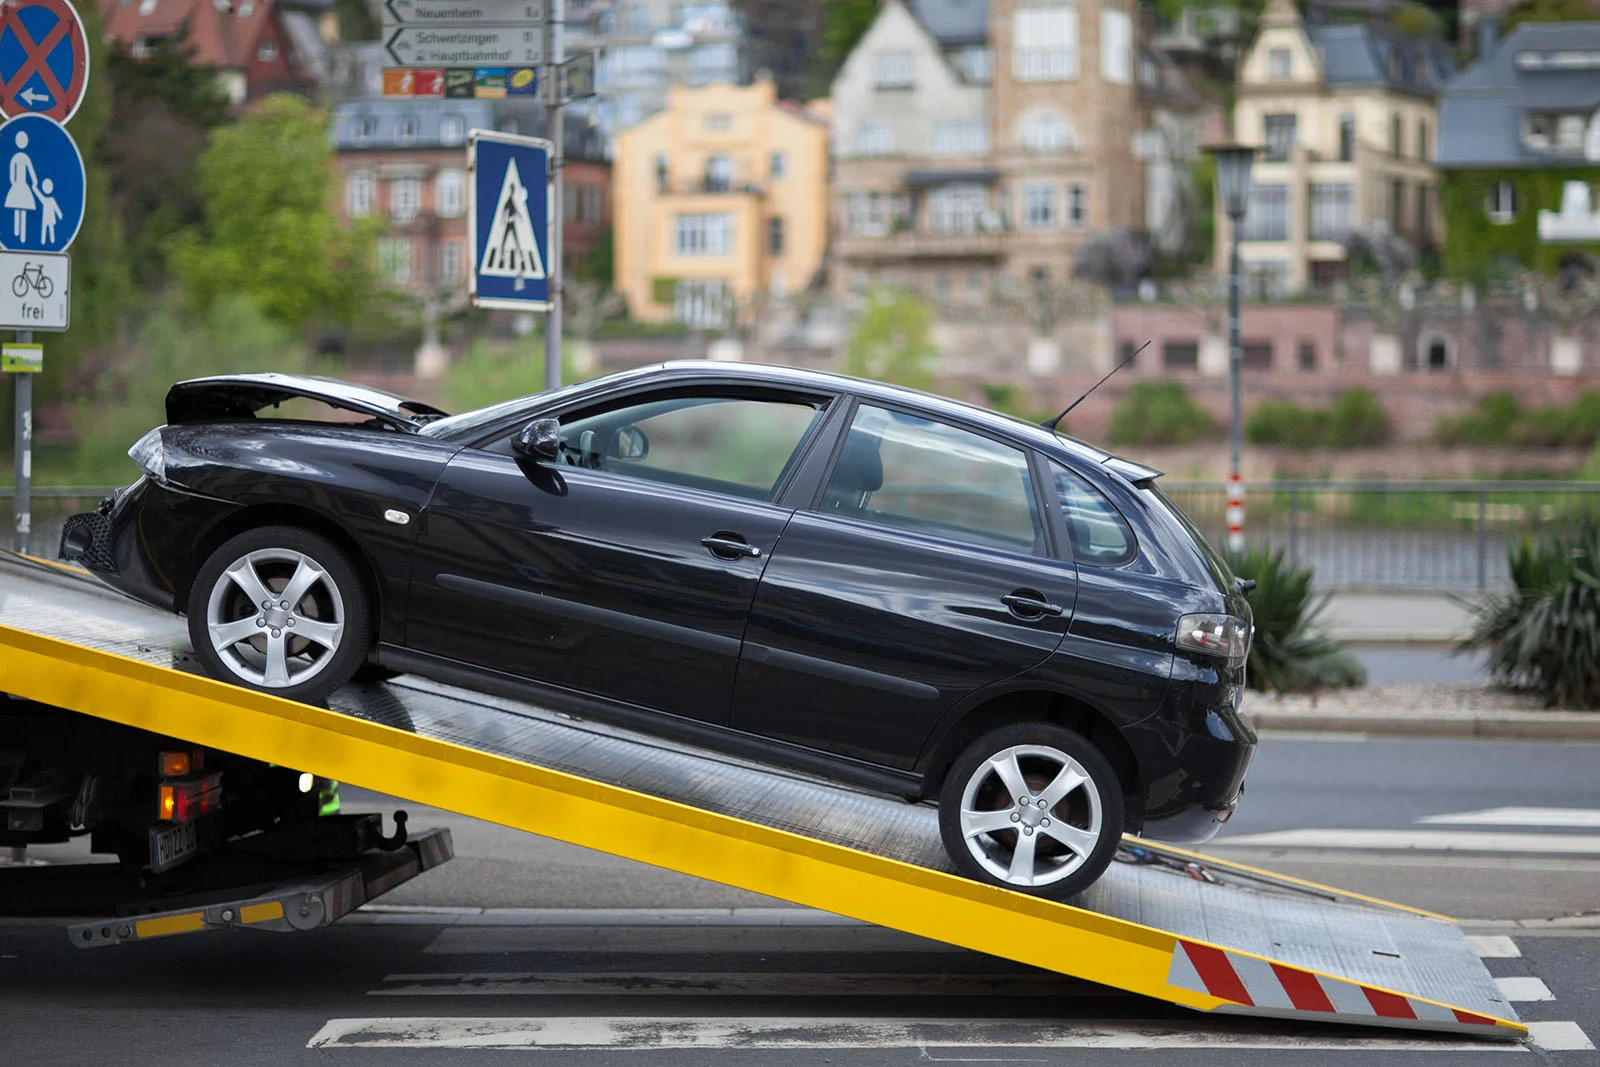 Vår bilskrot i Örebro hämtar din bil oavsett vart den står, helt kostnadsfritt.